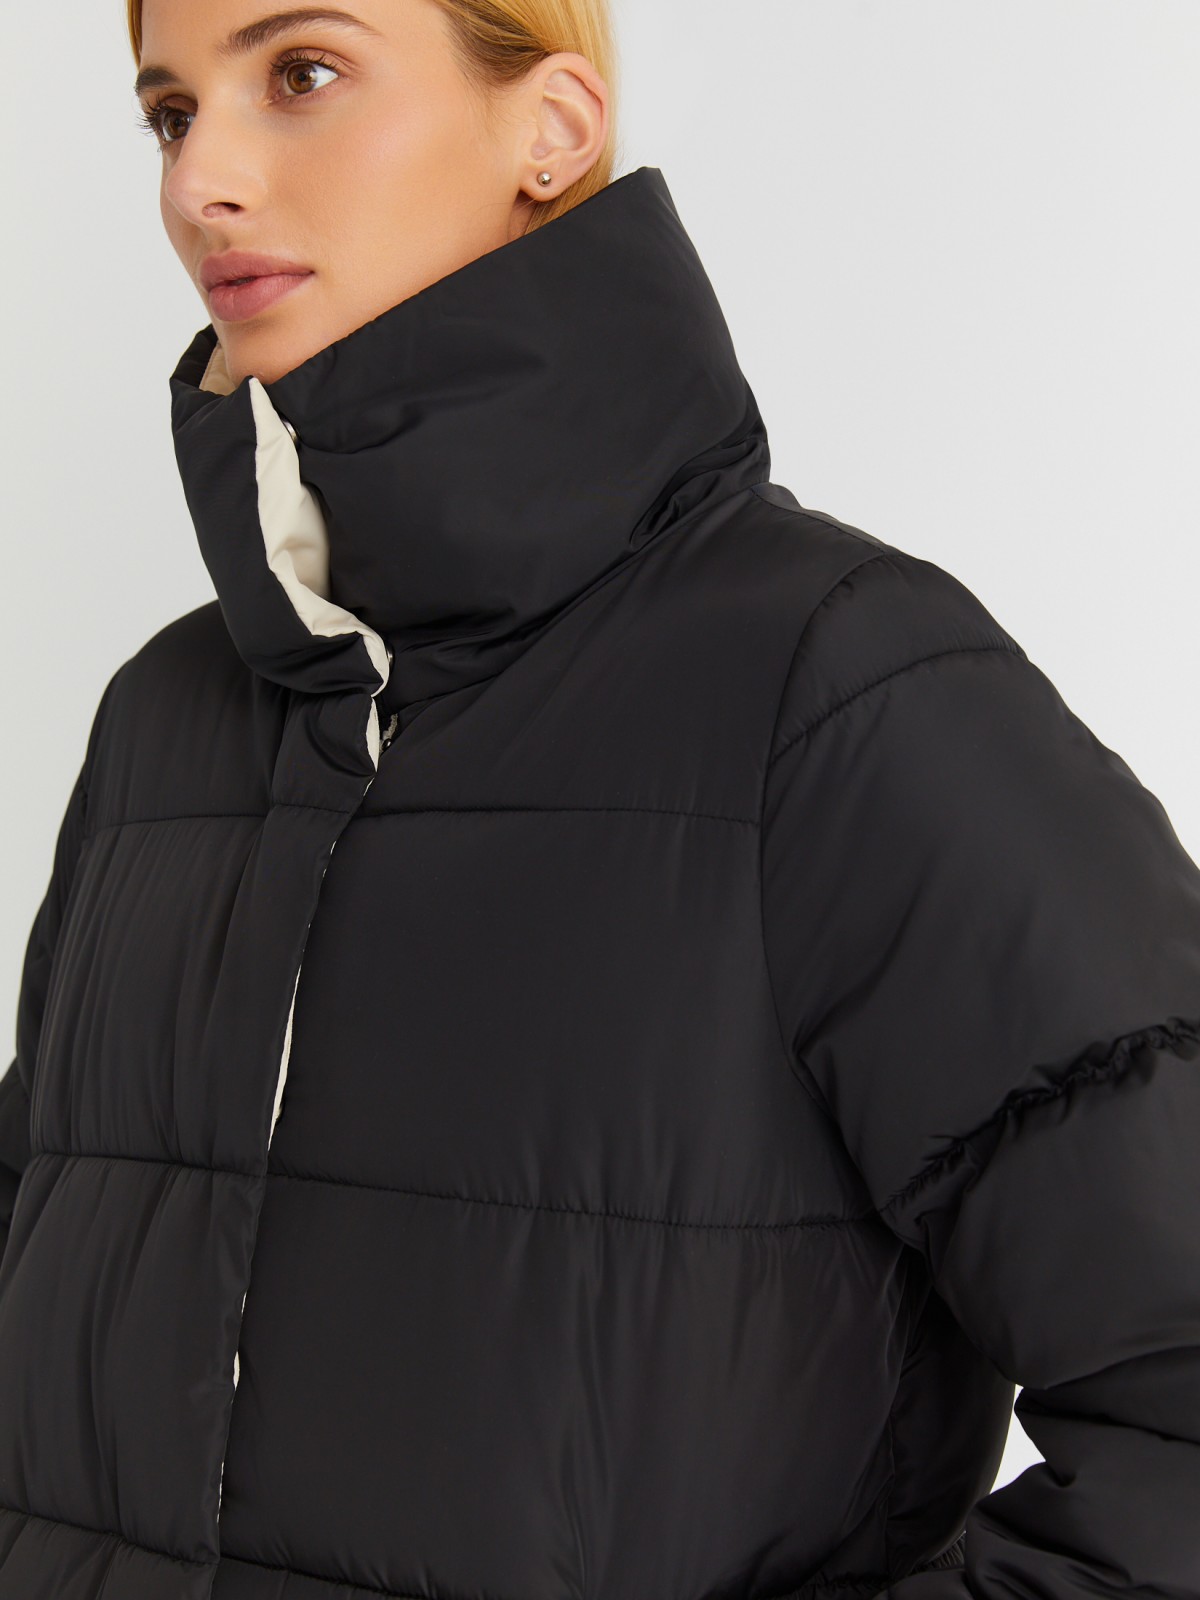 Тёплая стёганая куртка-пальто с высоким воротником zolla 023345202084, цвет черный, размер XS - фото 4